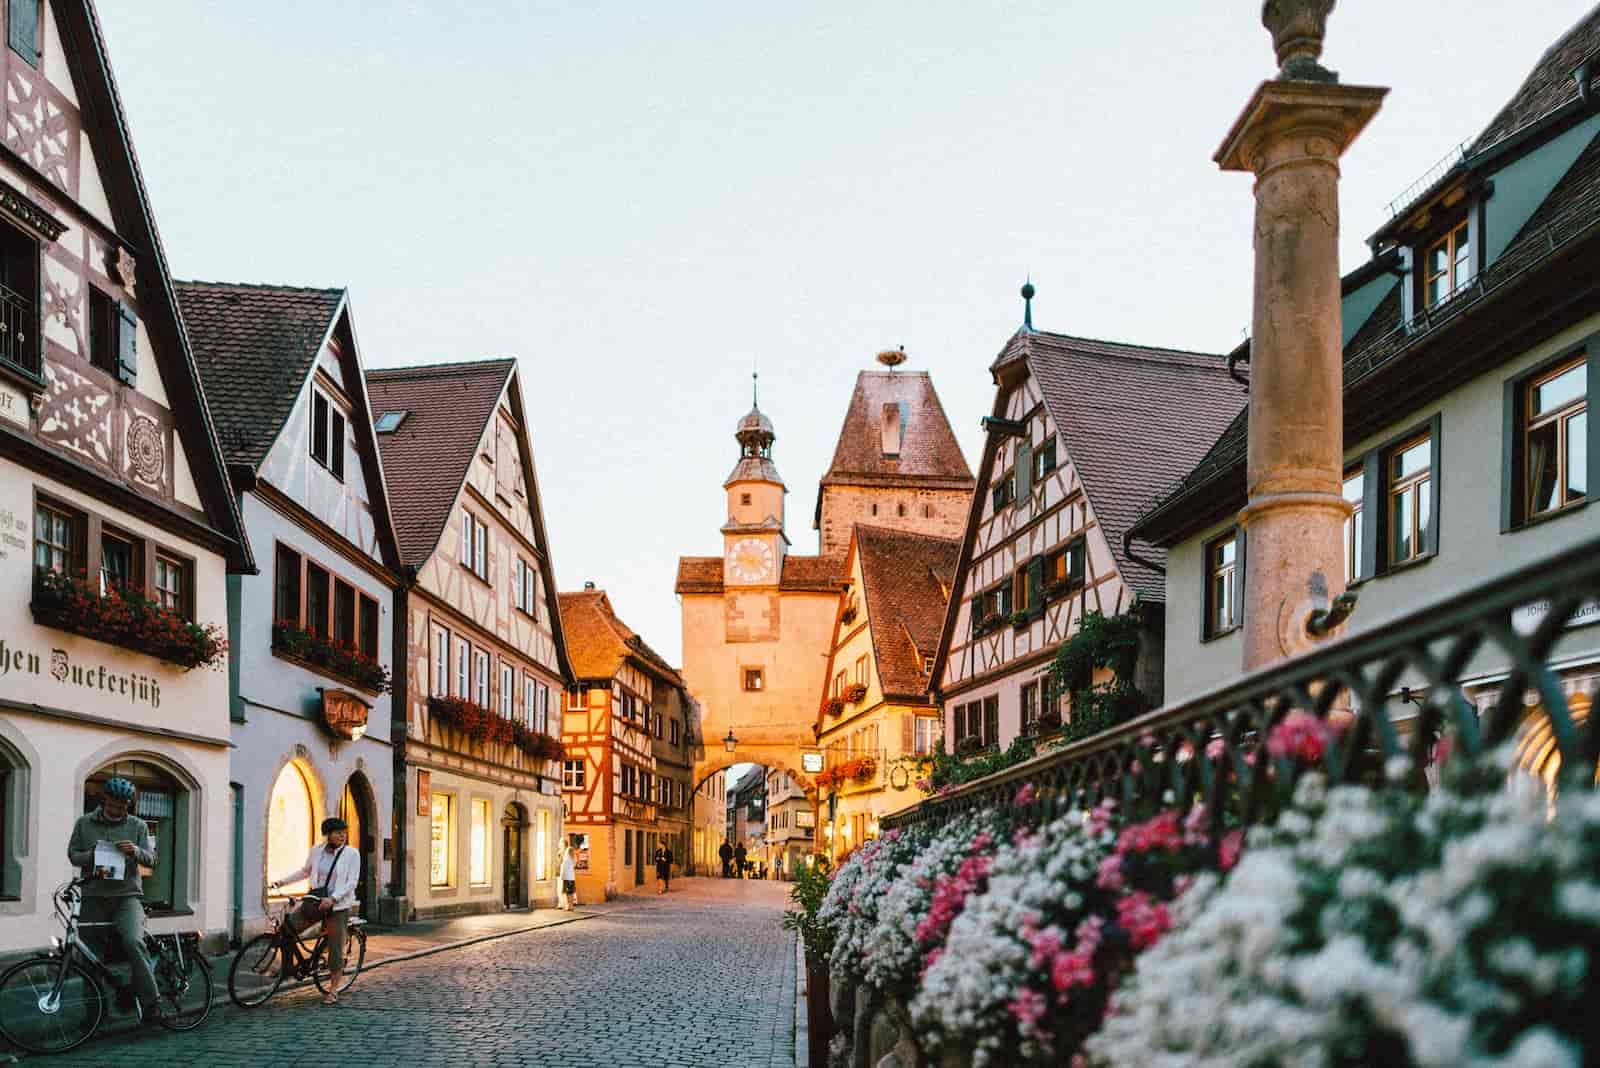 Jakie są najważniejsze atrakcje turystyczne i miejsca do zobaczenia w Niemczech dla osób w podeszłym wieku?